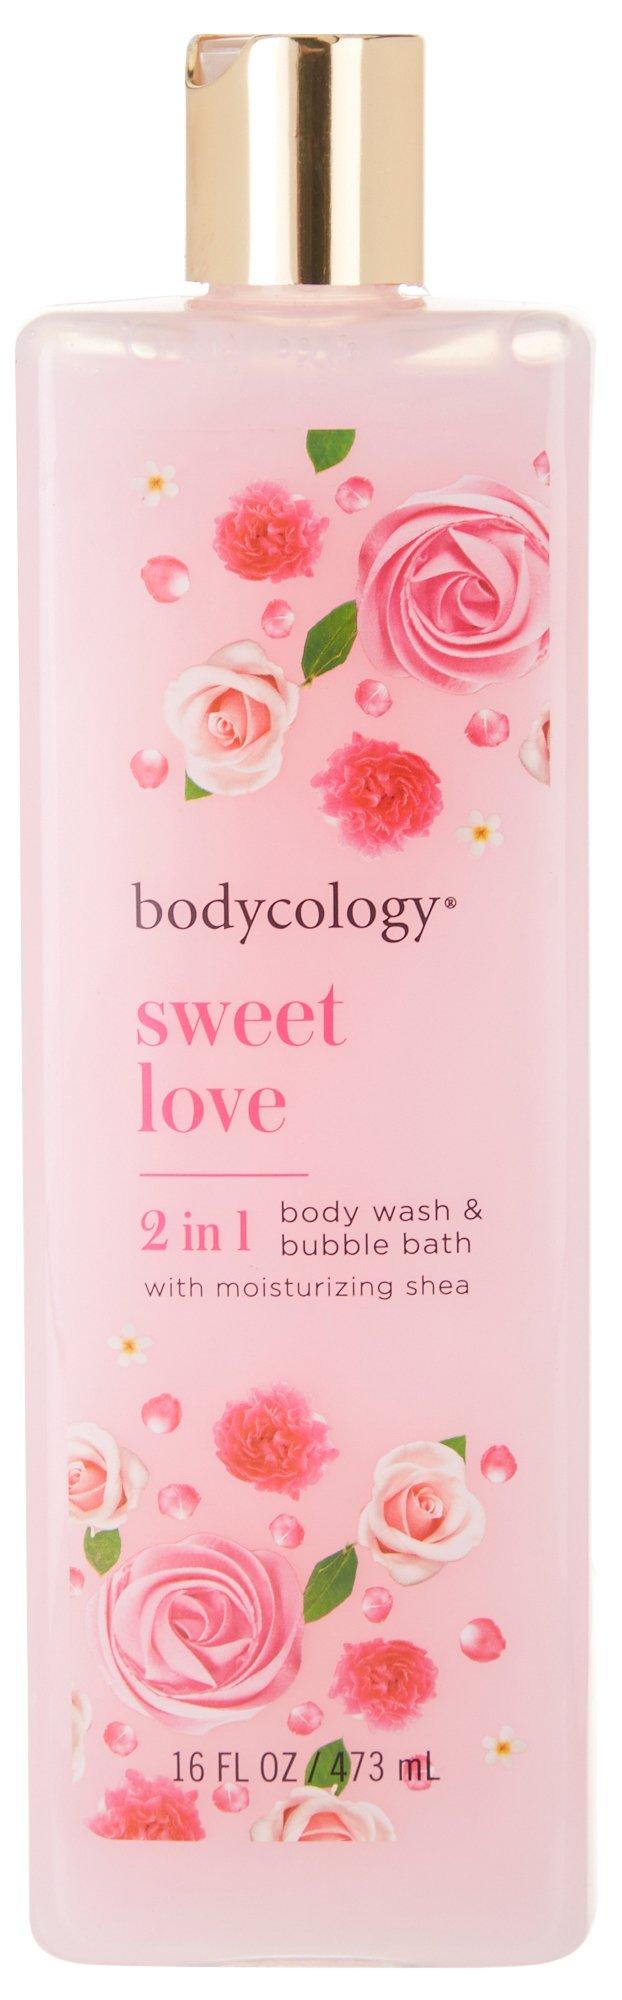 Bodycology Sweet Love Body Wash & Bubble Bath 16 oz.